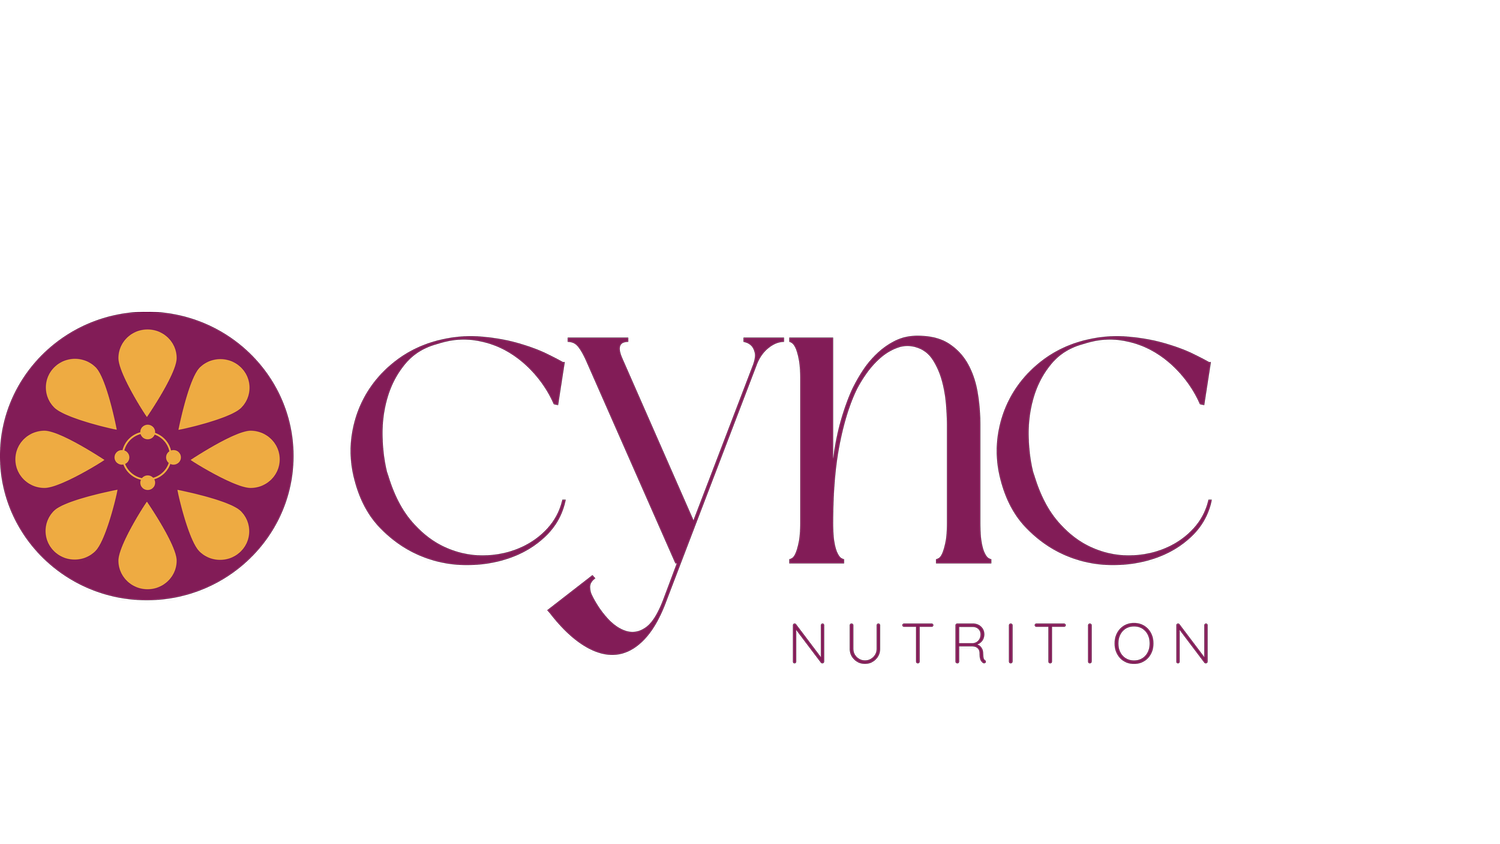 Cync Nutrition